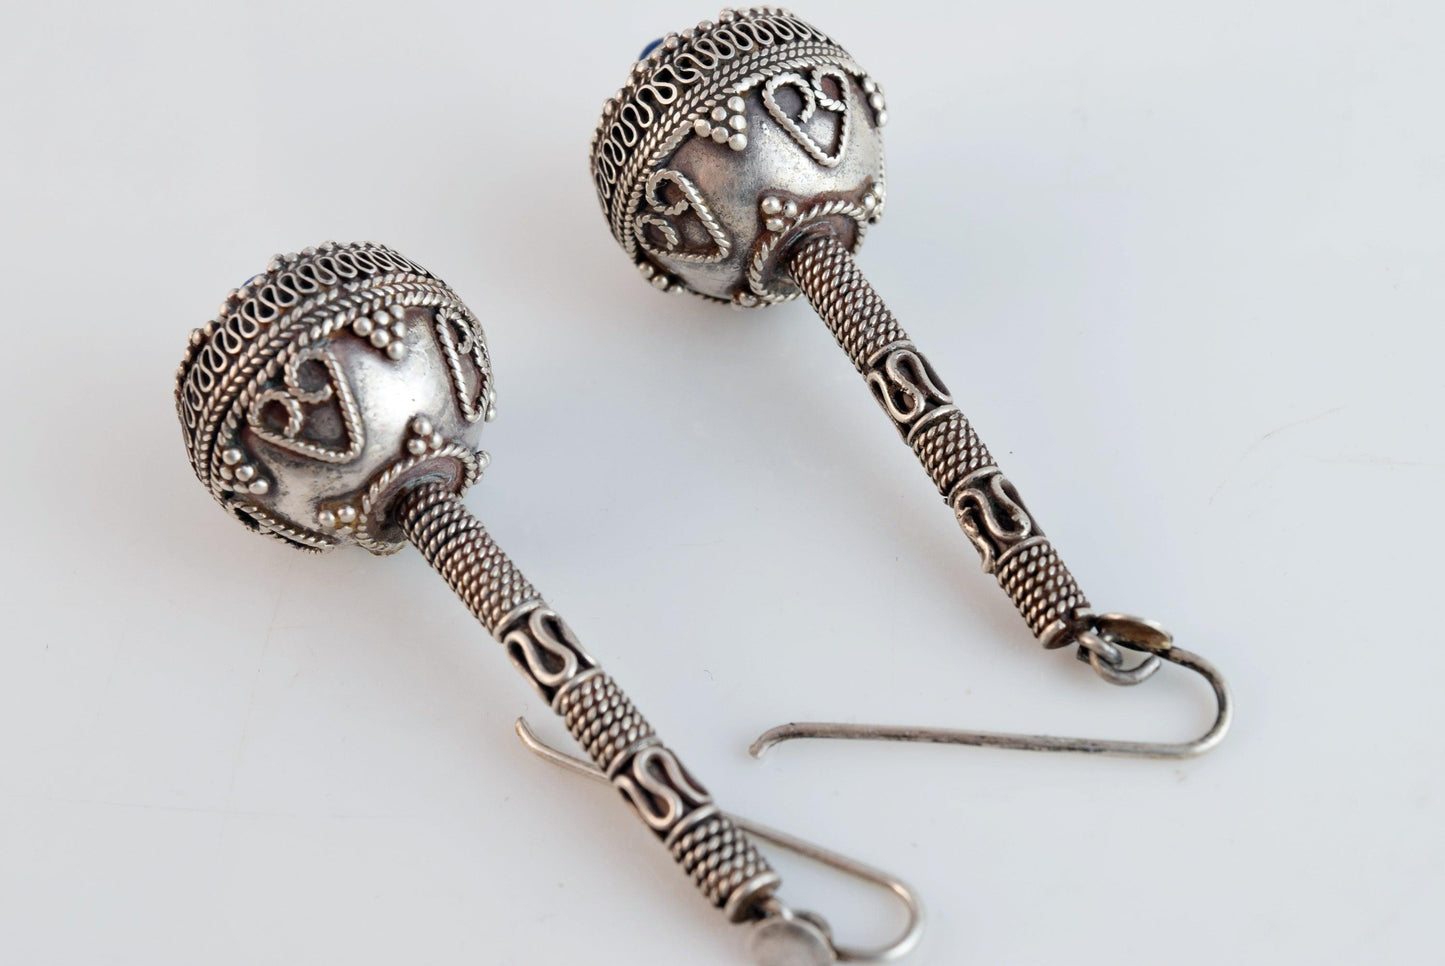 Afghani earrings